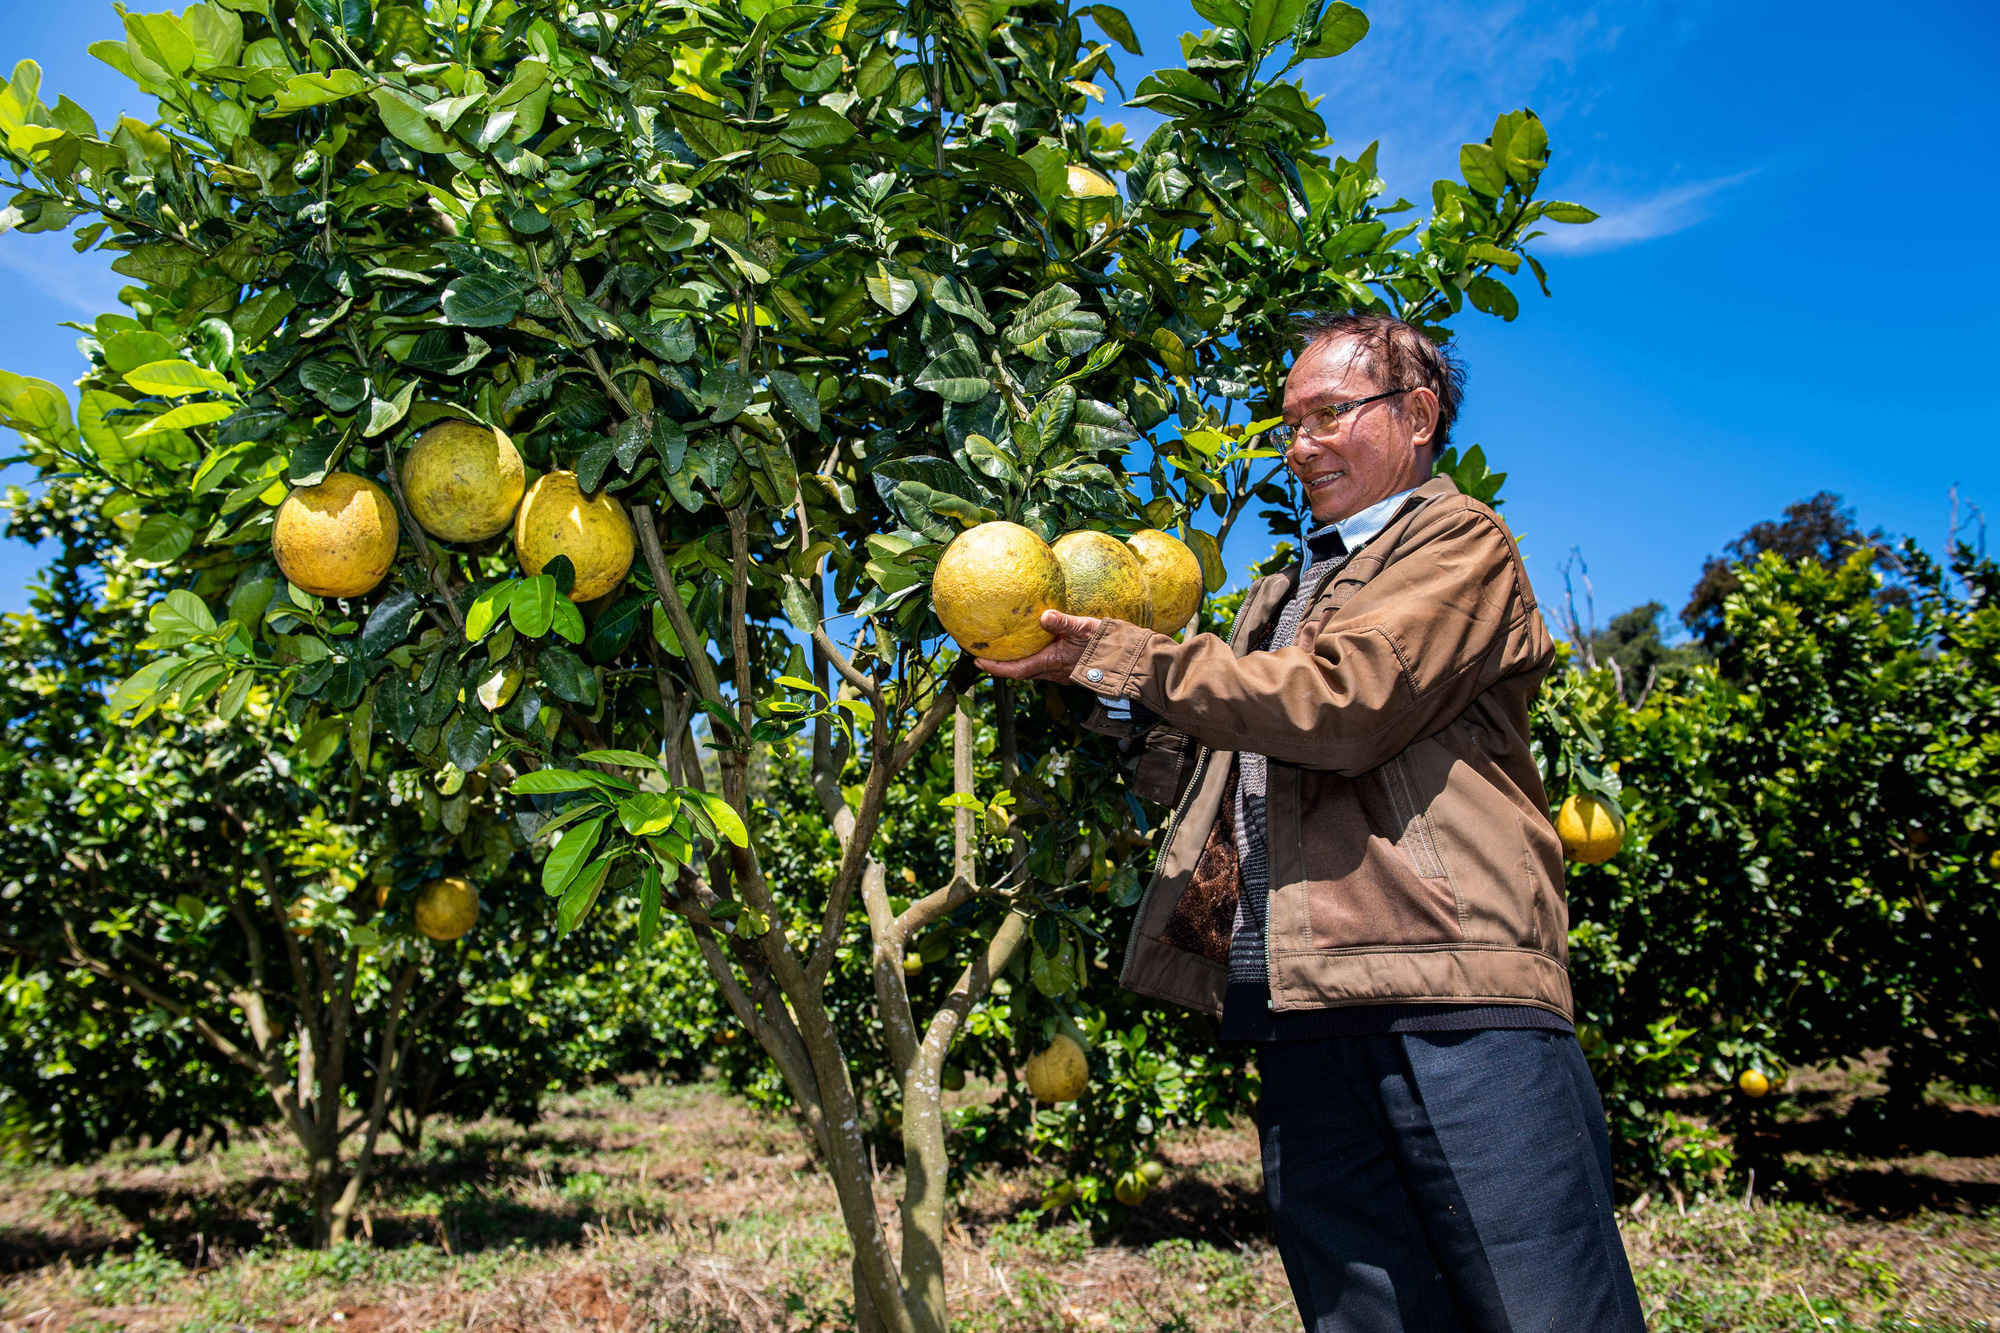 
"Đột nhập" trang trại 20 tỷ đồng chuẩn Organic "đẹp như tranh vẽ" ở Kon Tum, cung cấp 240 tấn trái cây mỗi năm - Ảnh 2.